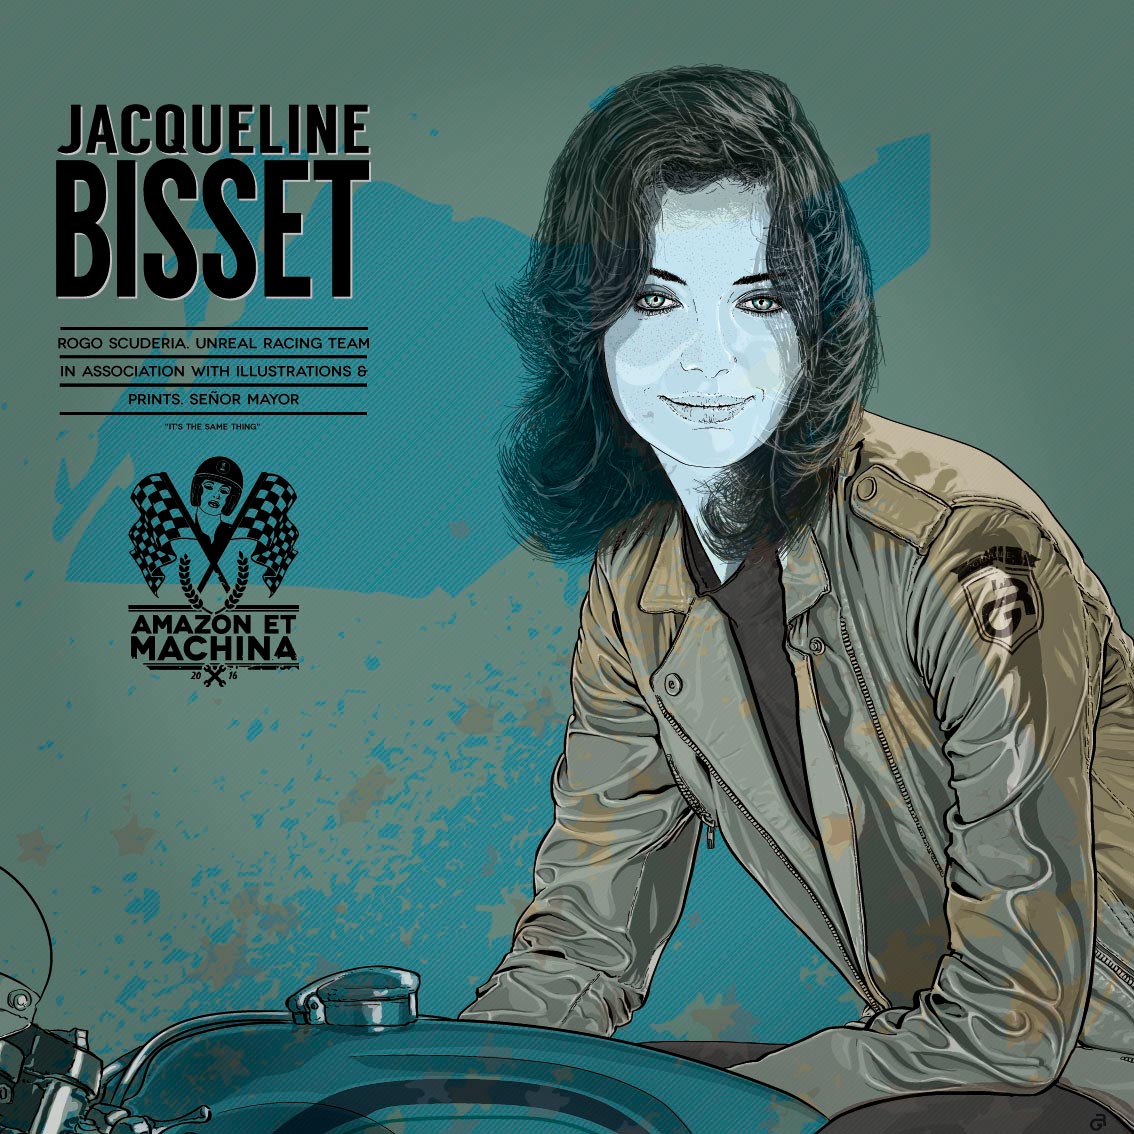 Retrato de Jacqueline Bisset para la serie Amazon et Machina.